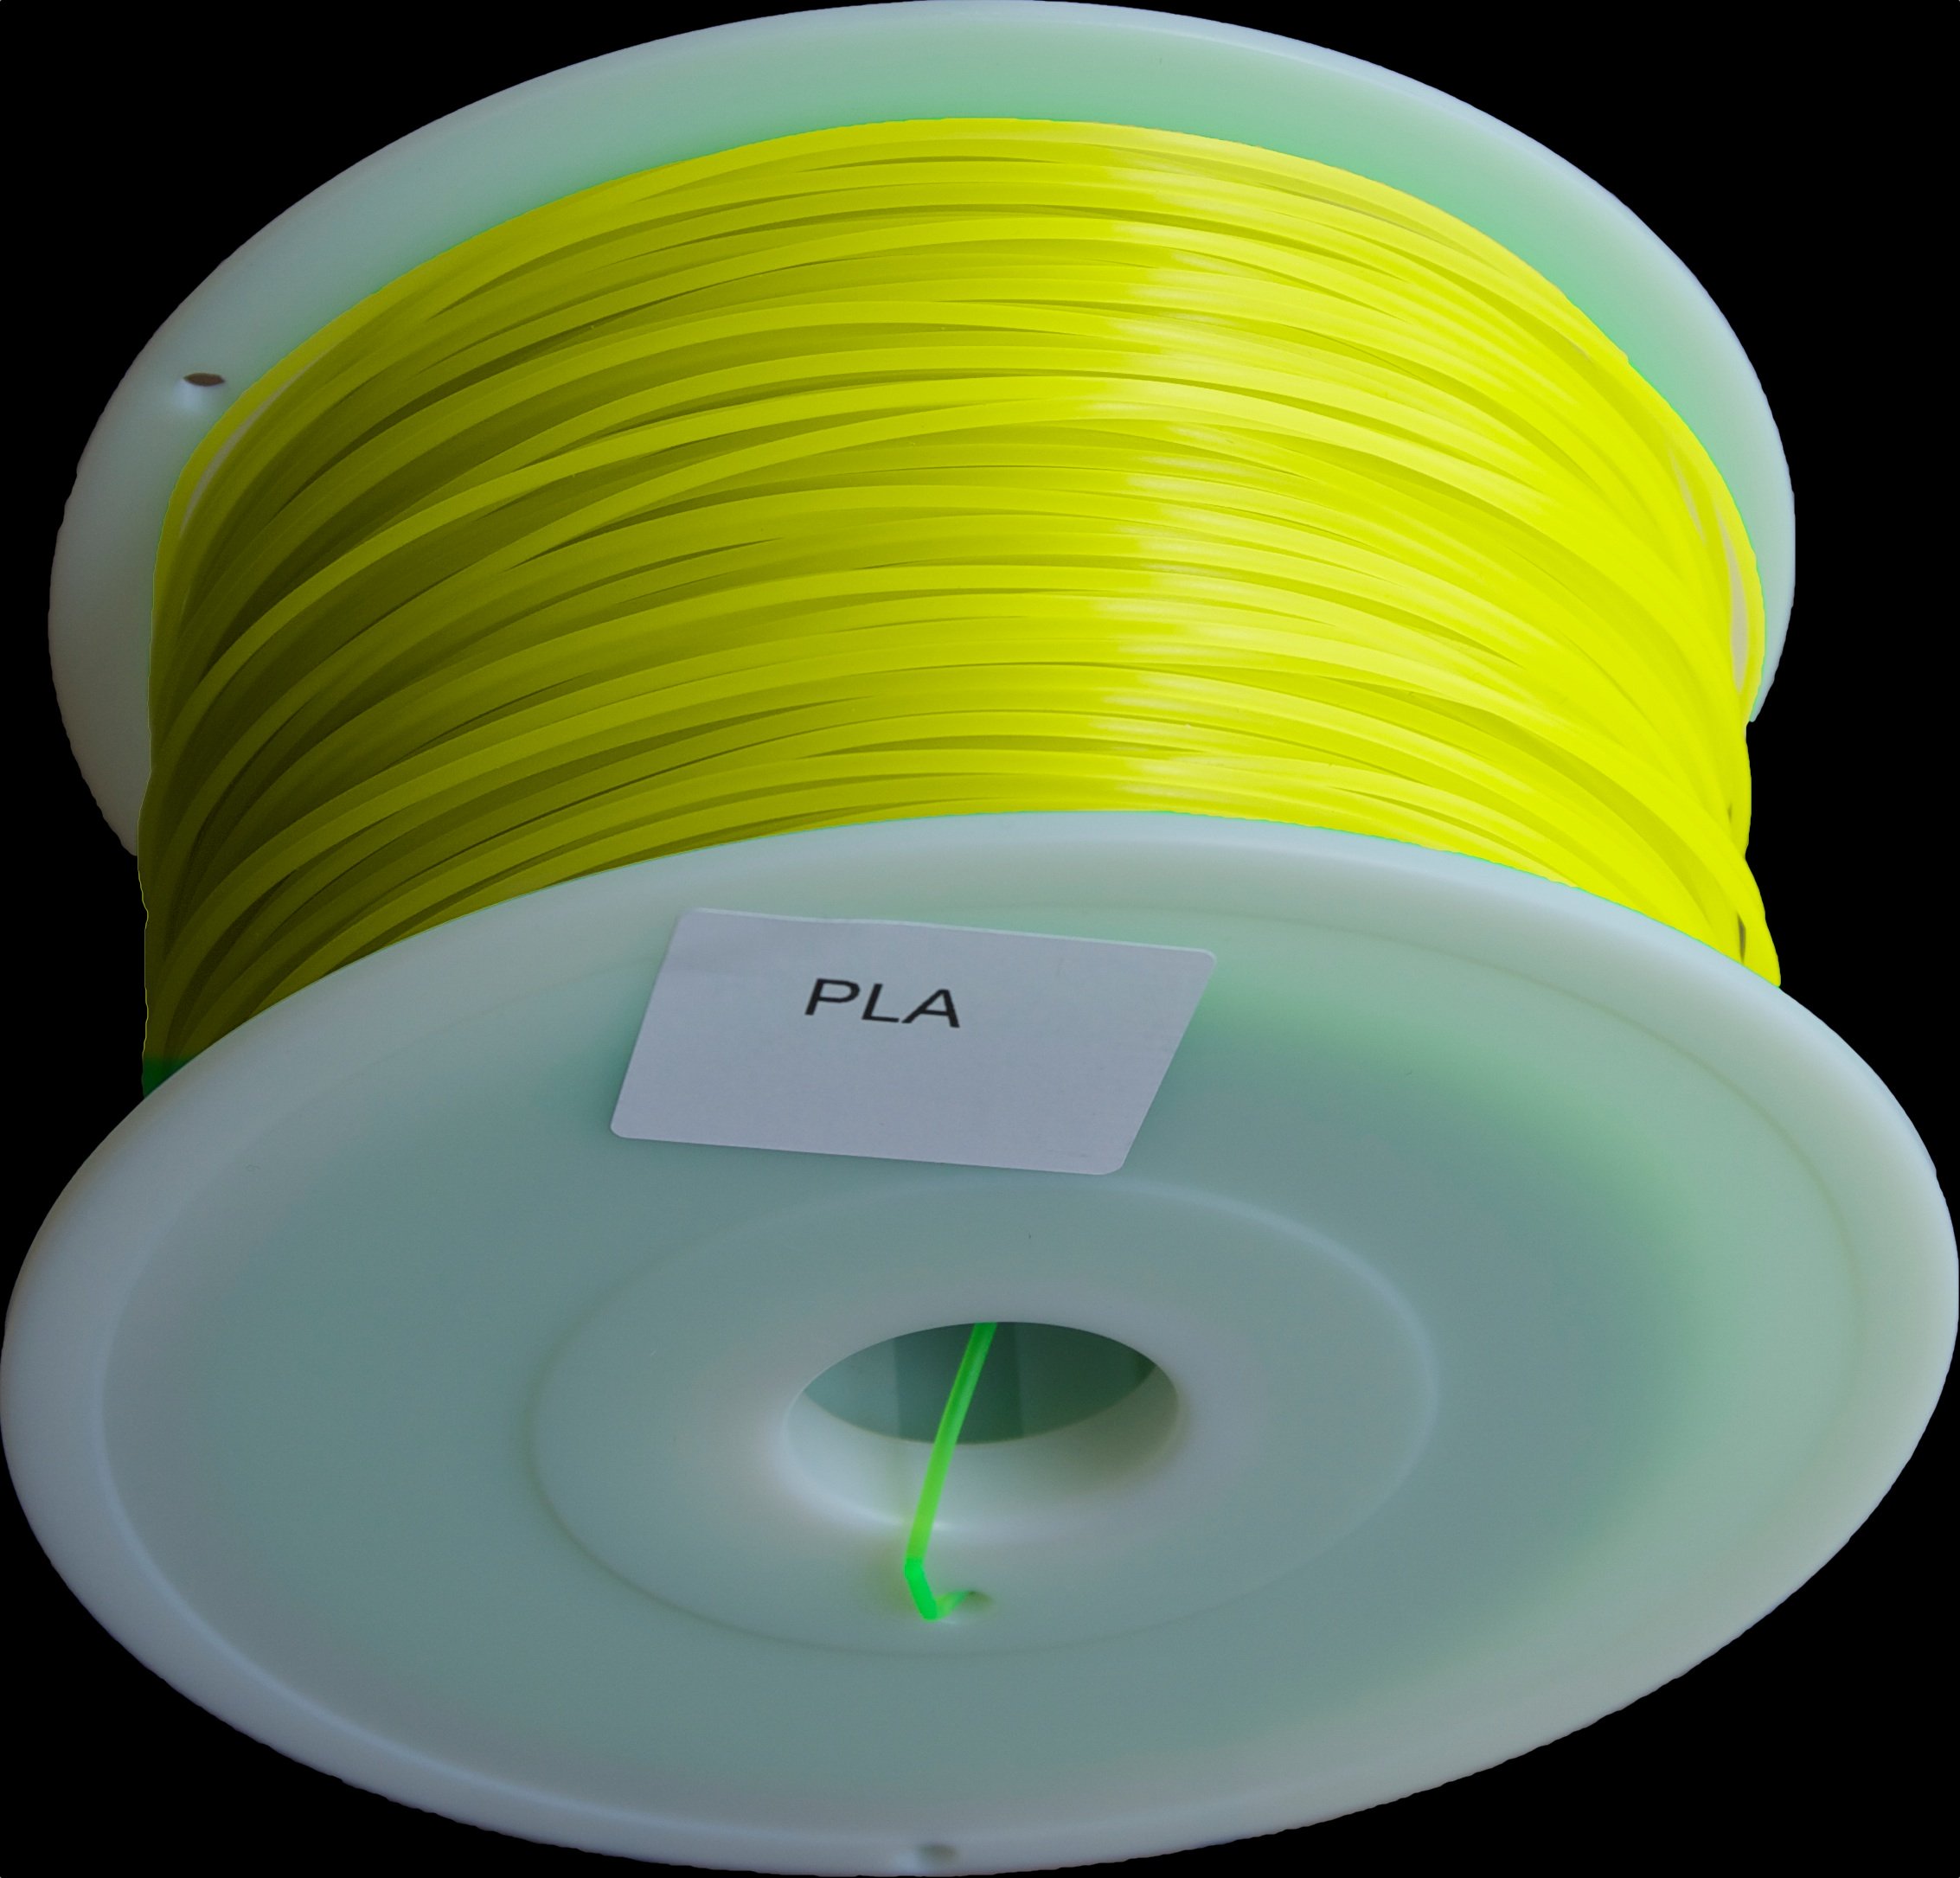 Filament PLA jaune translucide 1.75mm